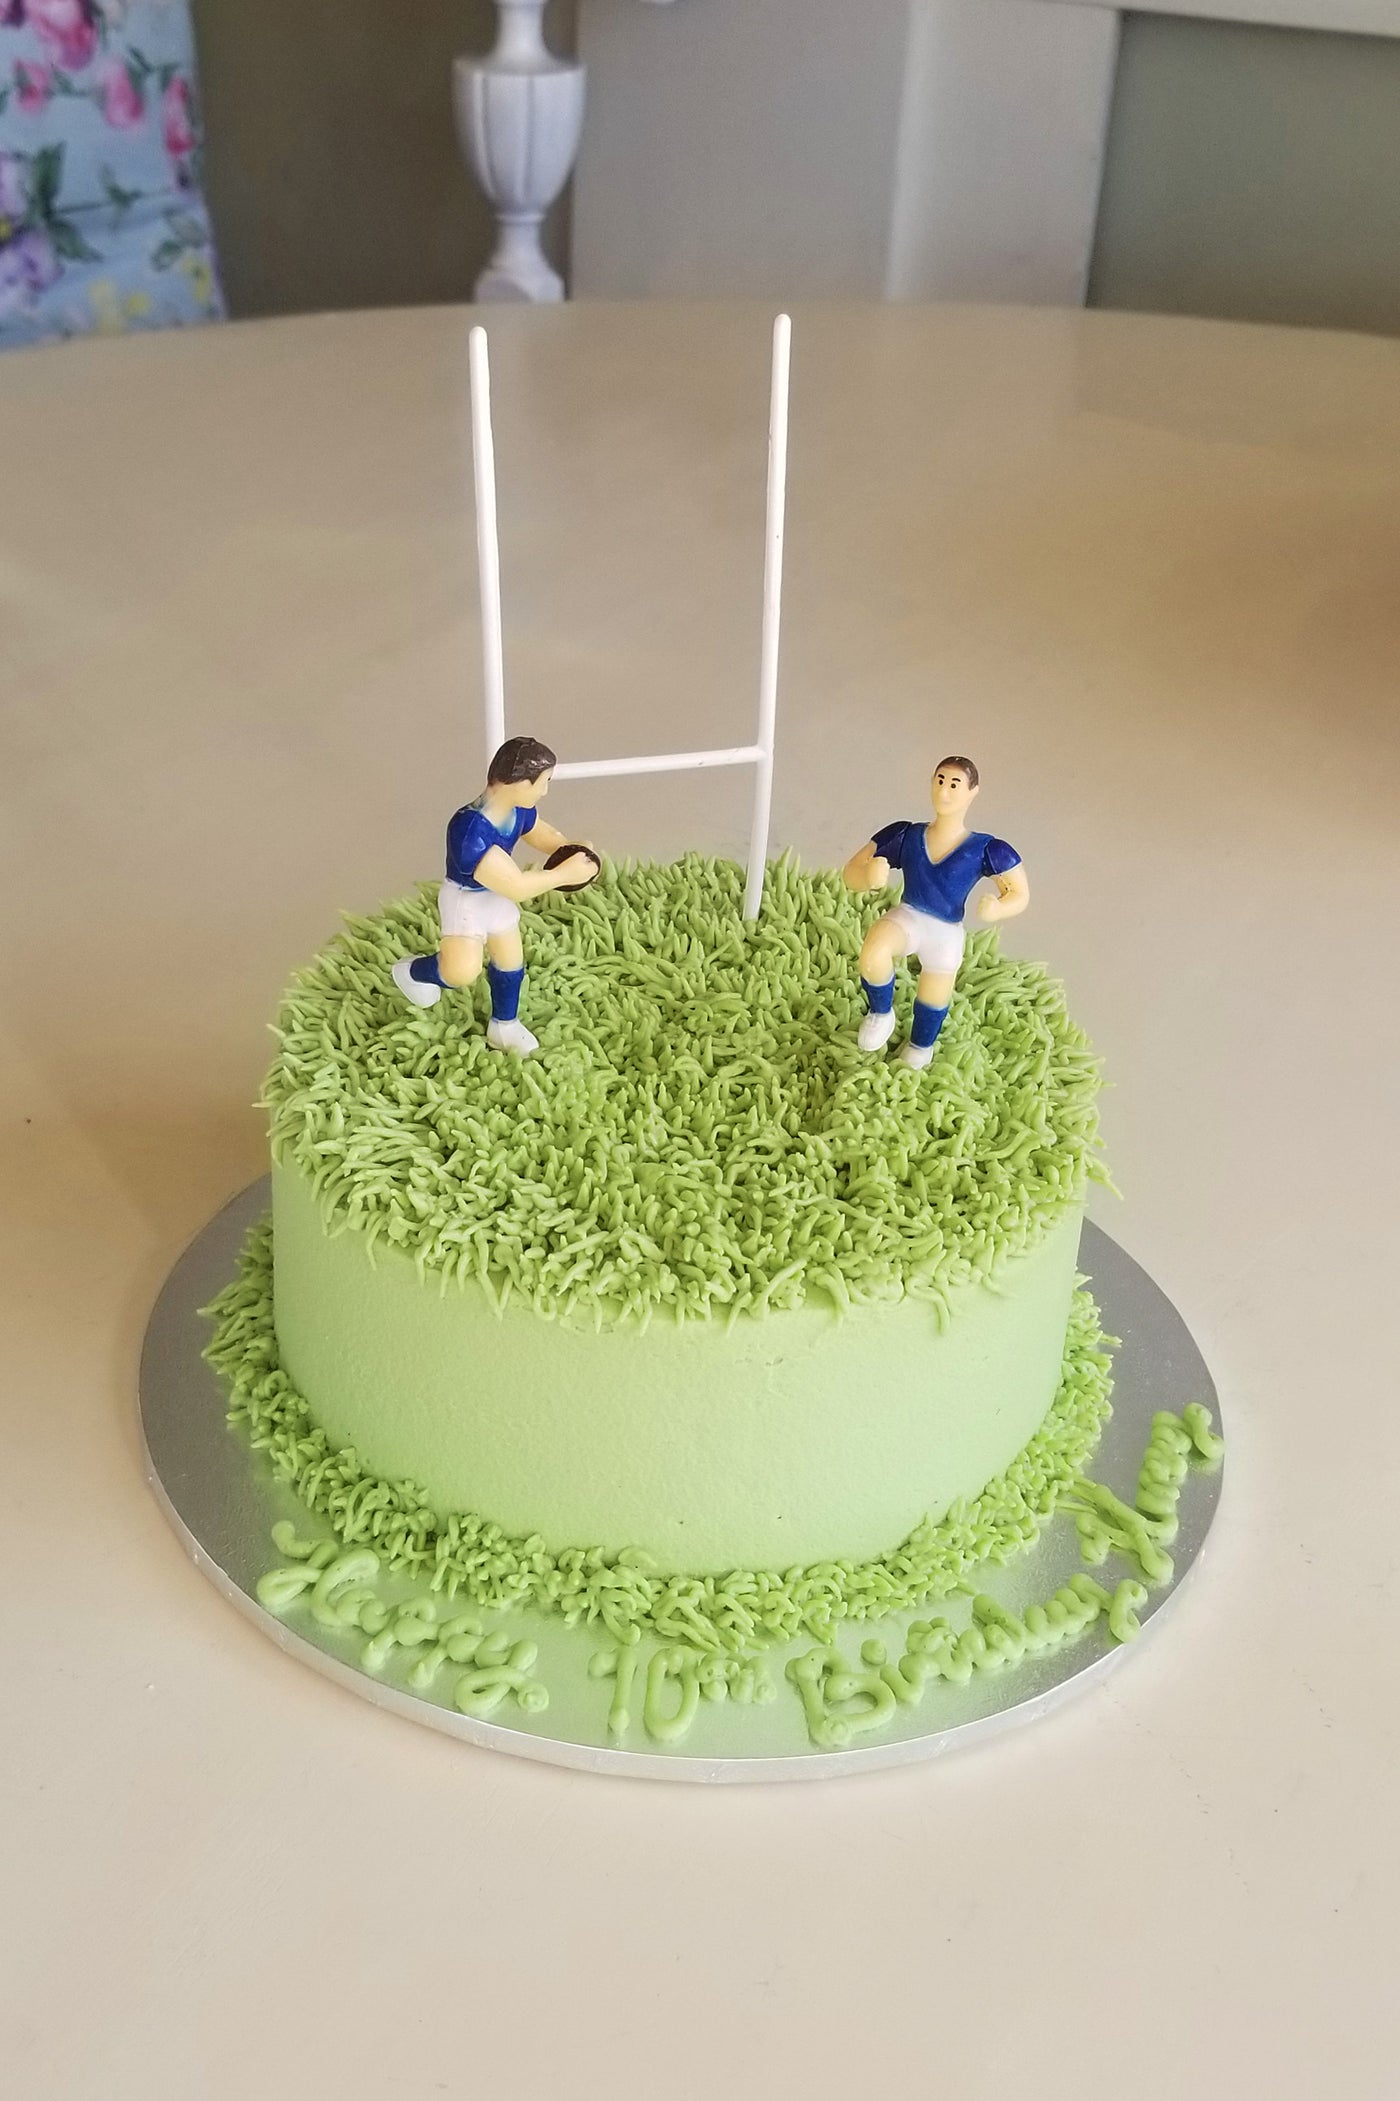 England rugby pitch cake | England rugby pitch cake | Flickr